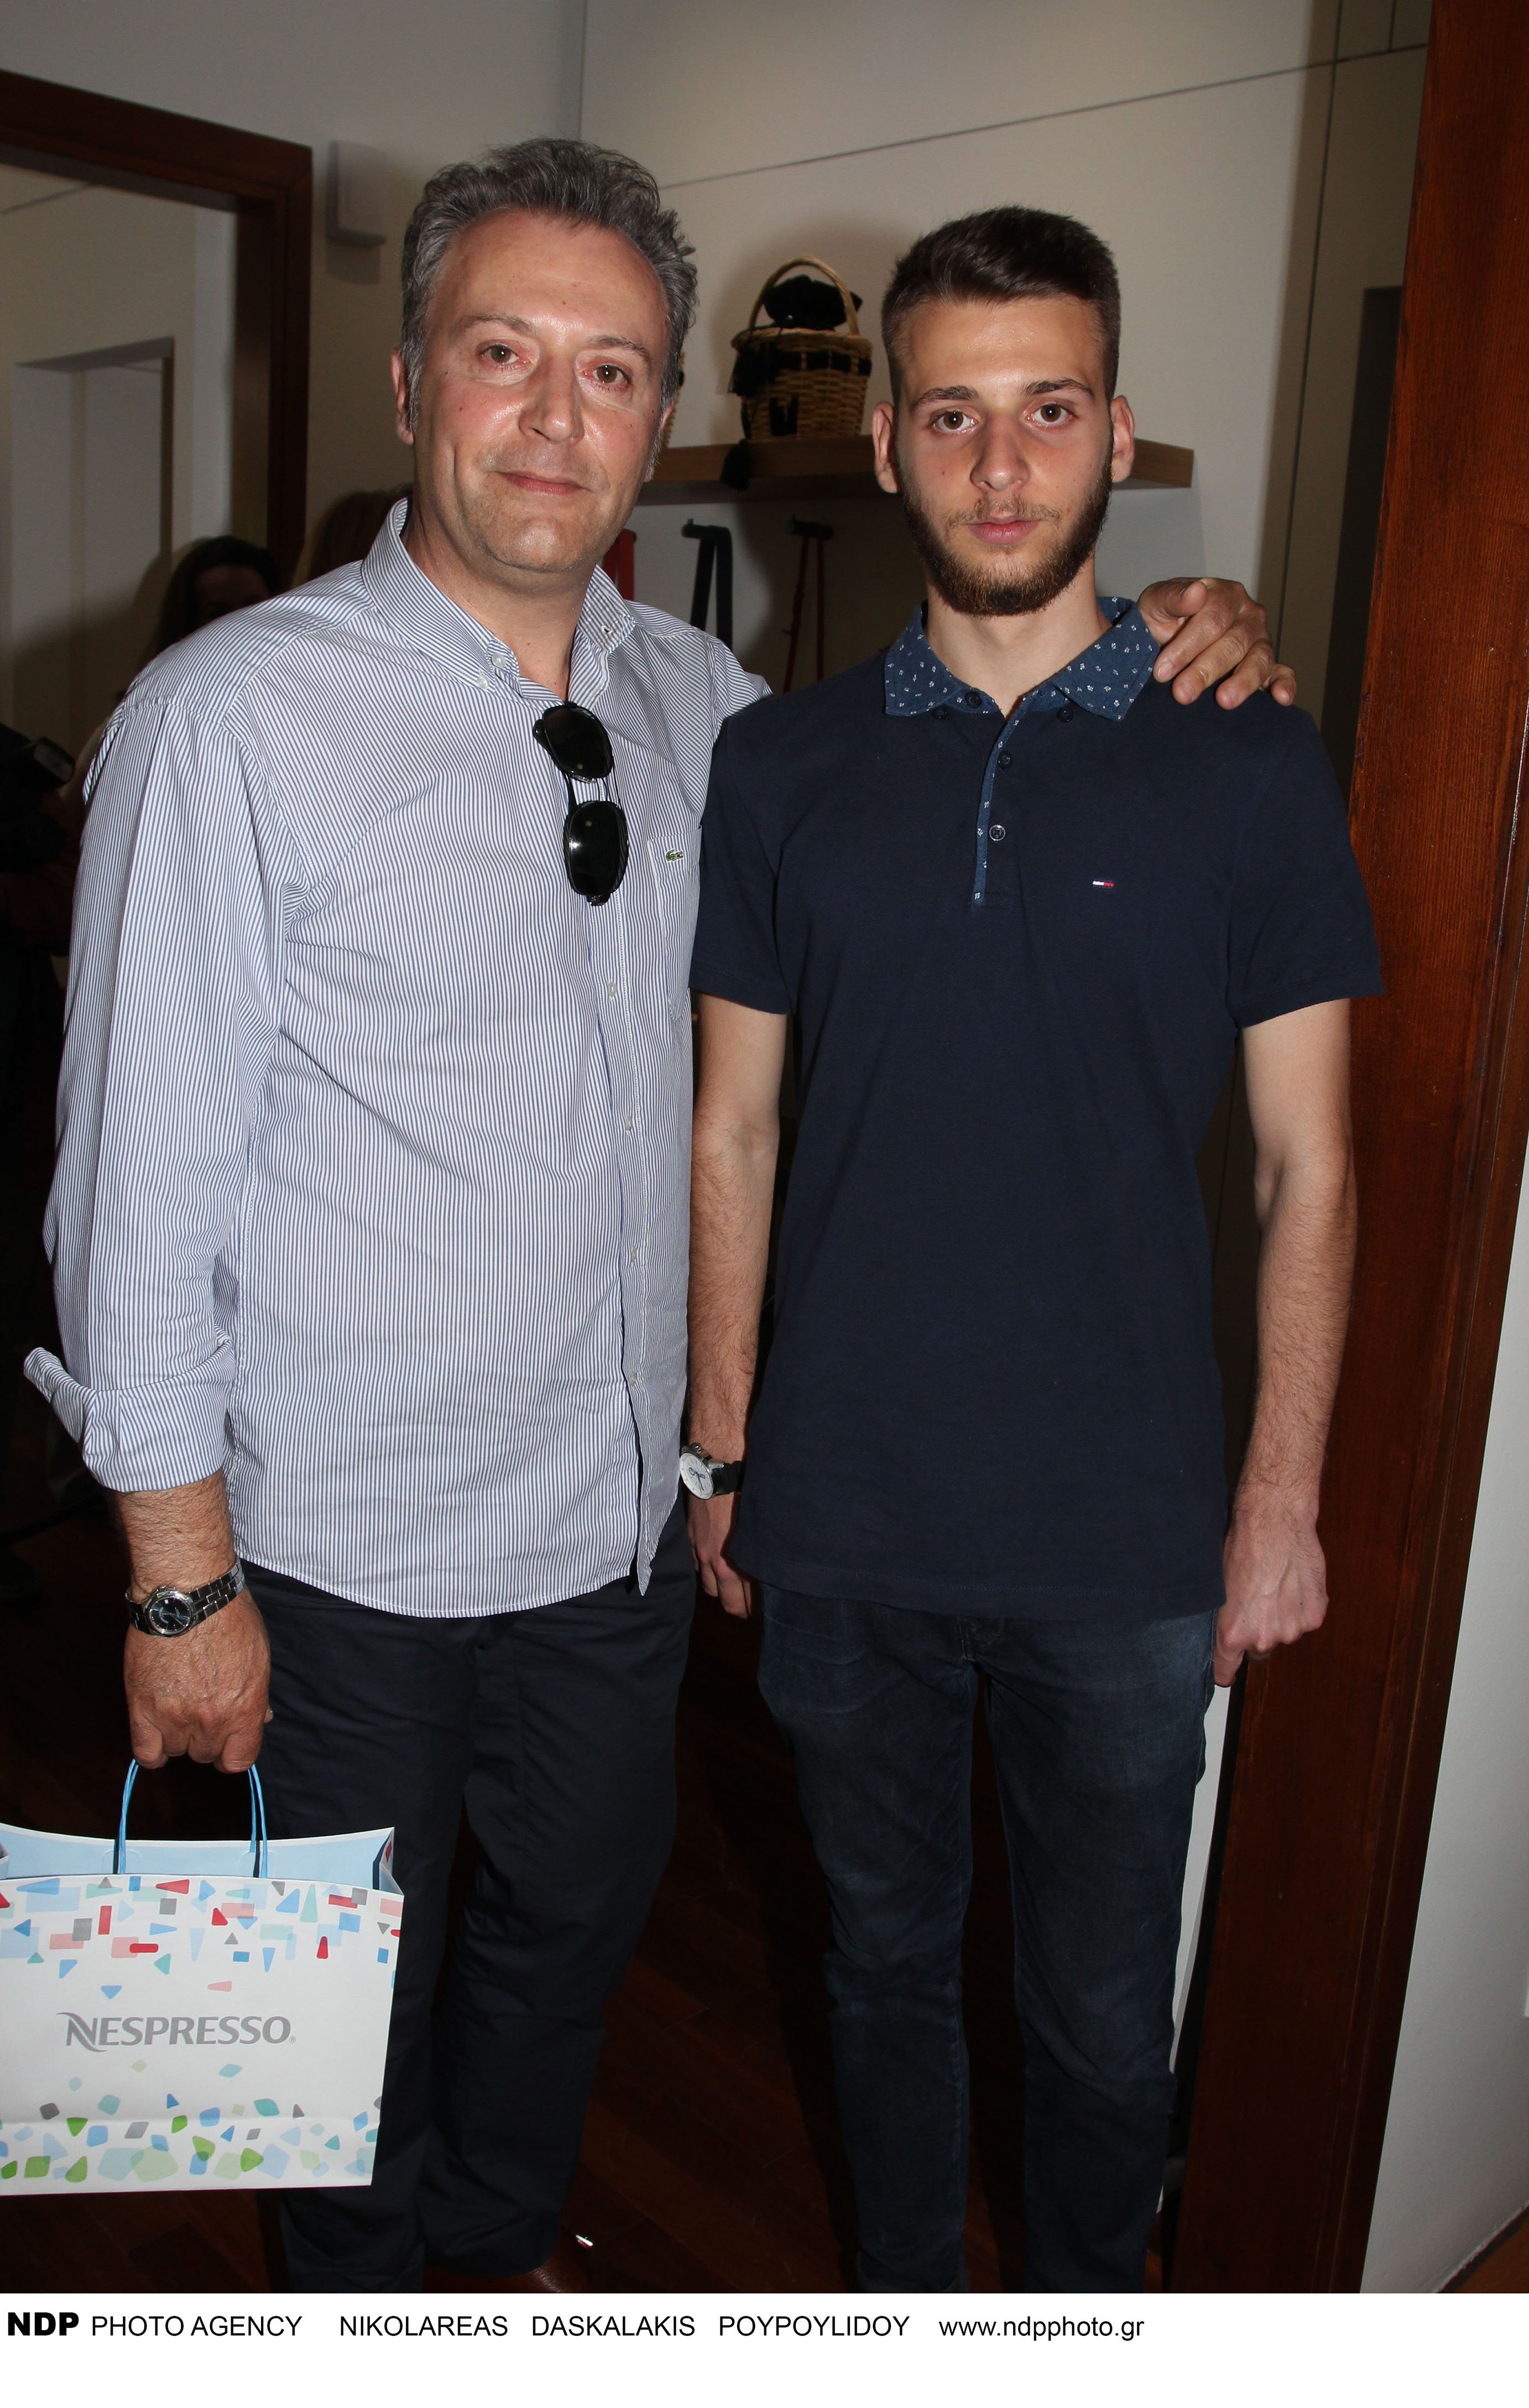 Δημήτρης Οικονόμου: Δείτε τον δημοσιογράφο να ποζάρει με τον γιο του- Η απίστευτη ομοιότητα μεταξύ τους